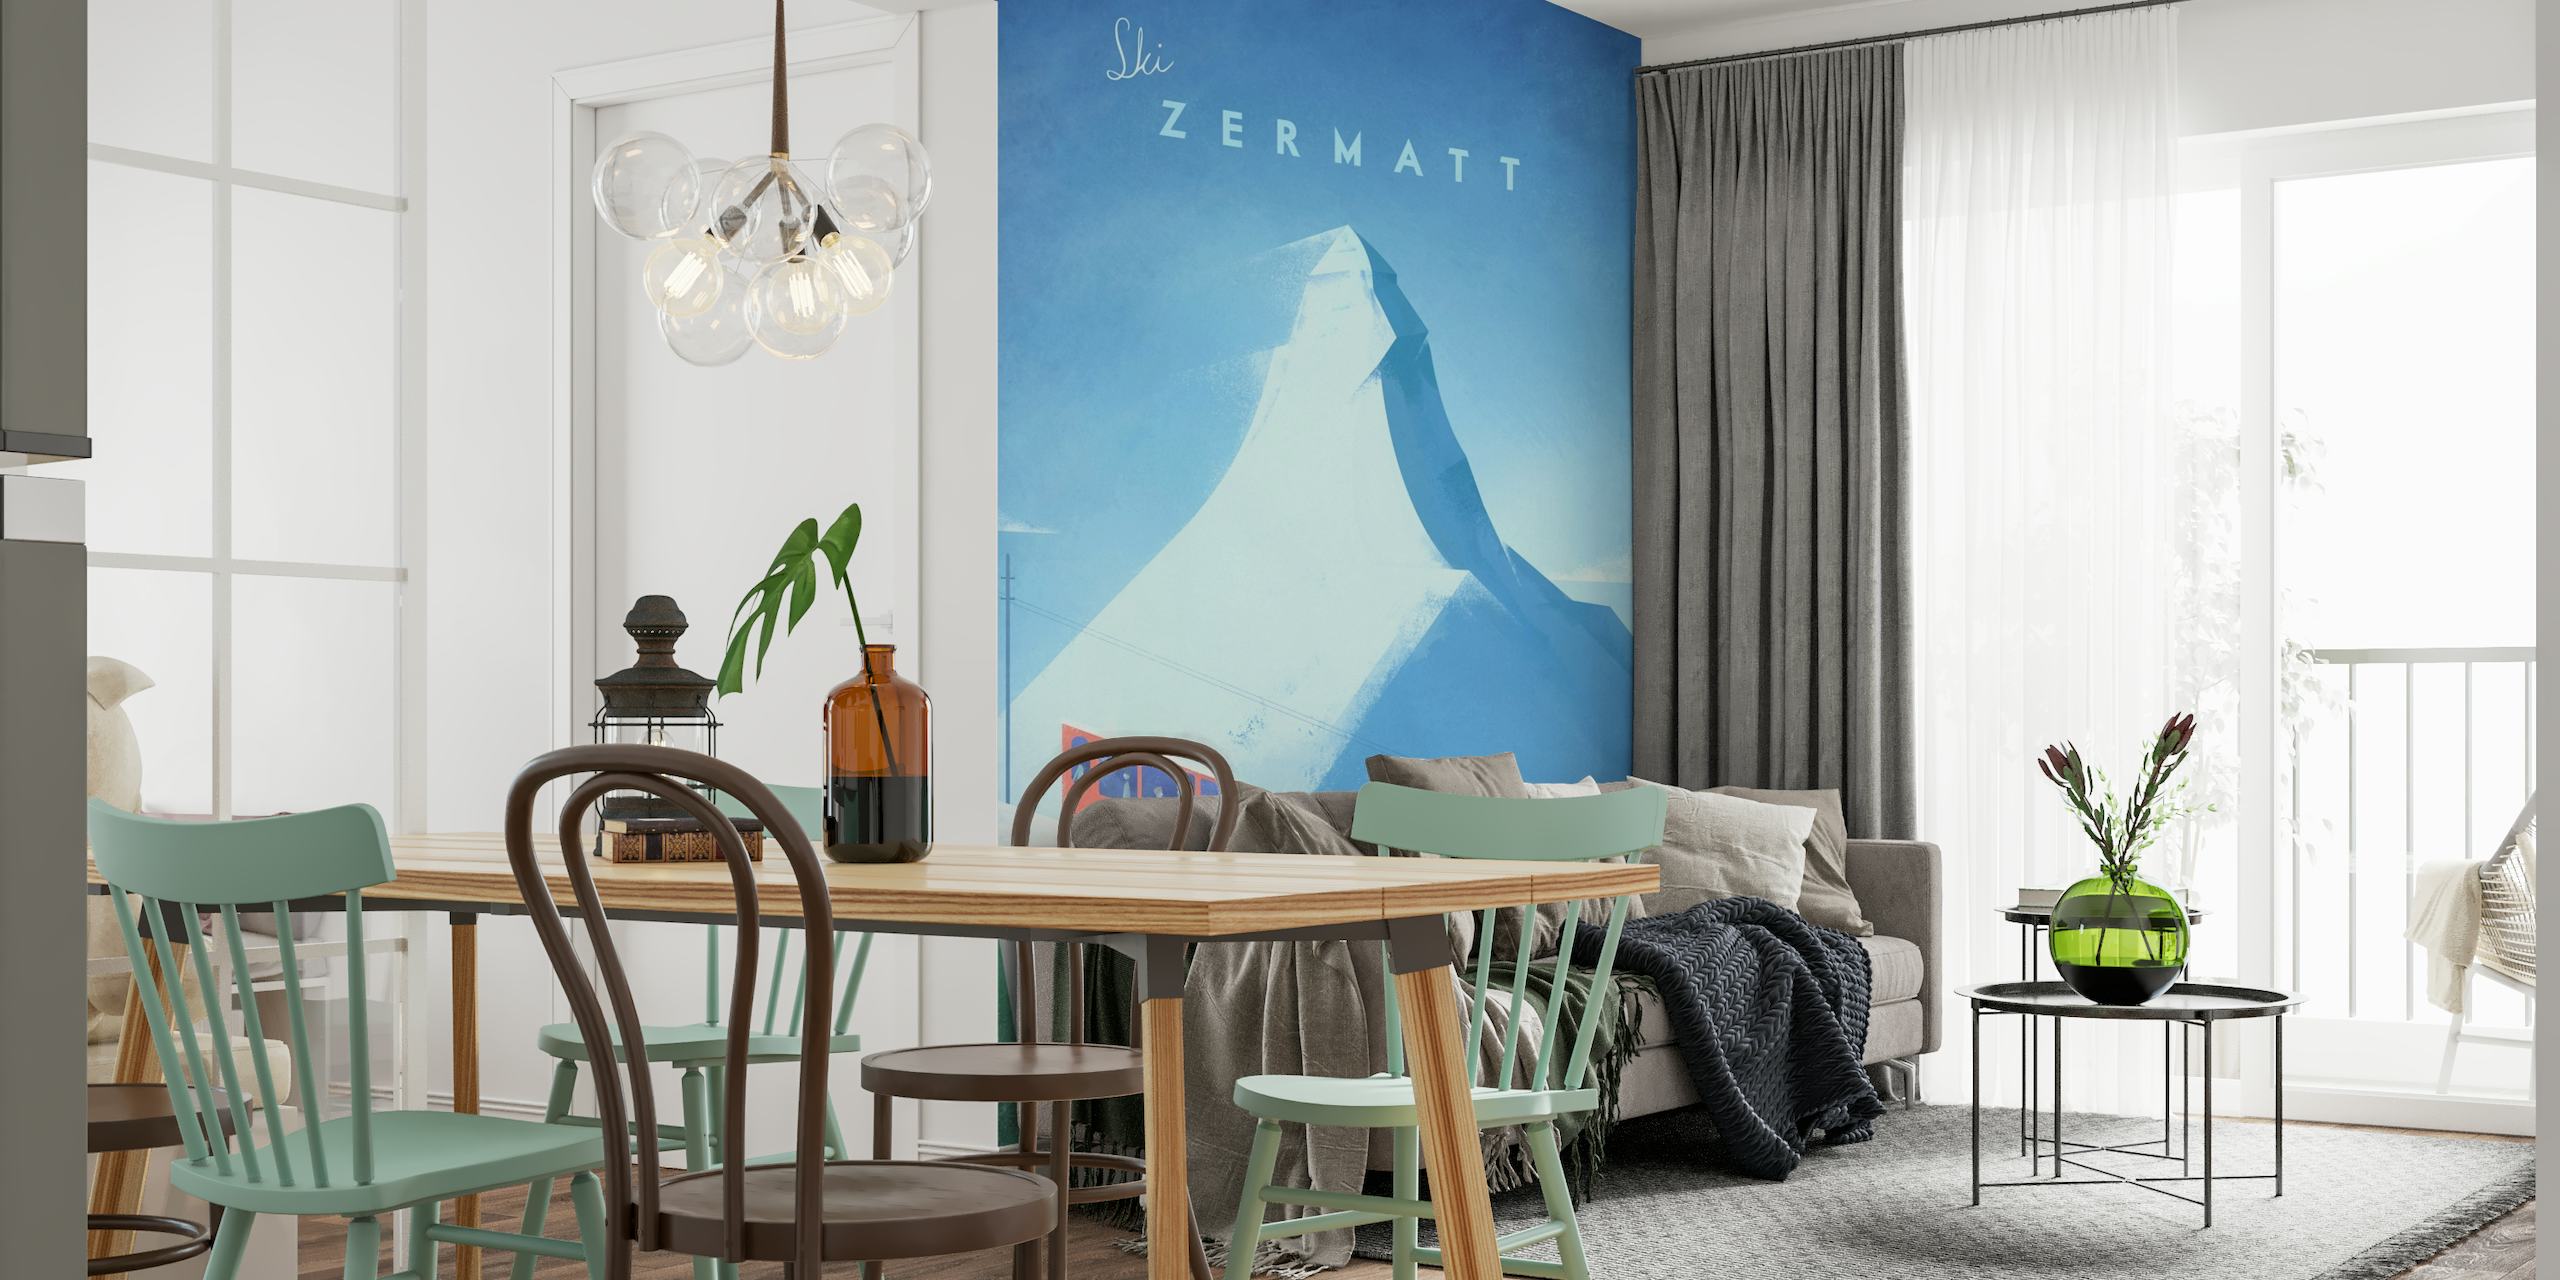 Zermatt Travel Poster behang